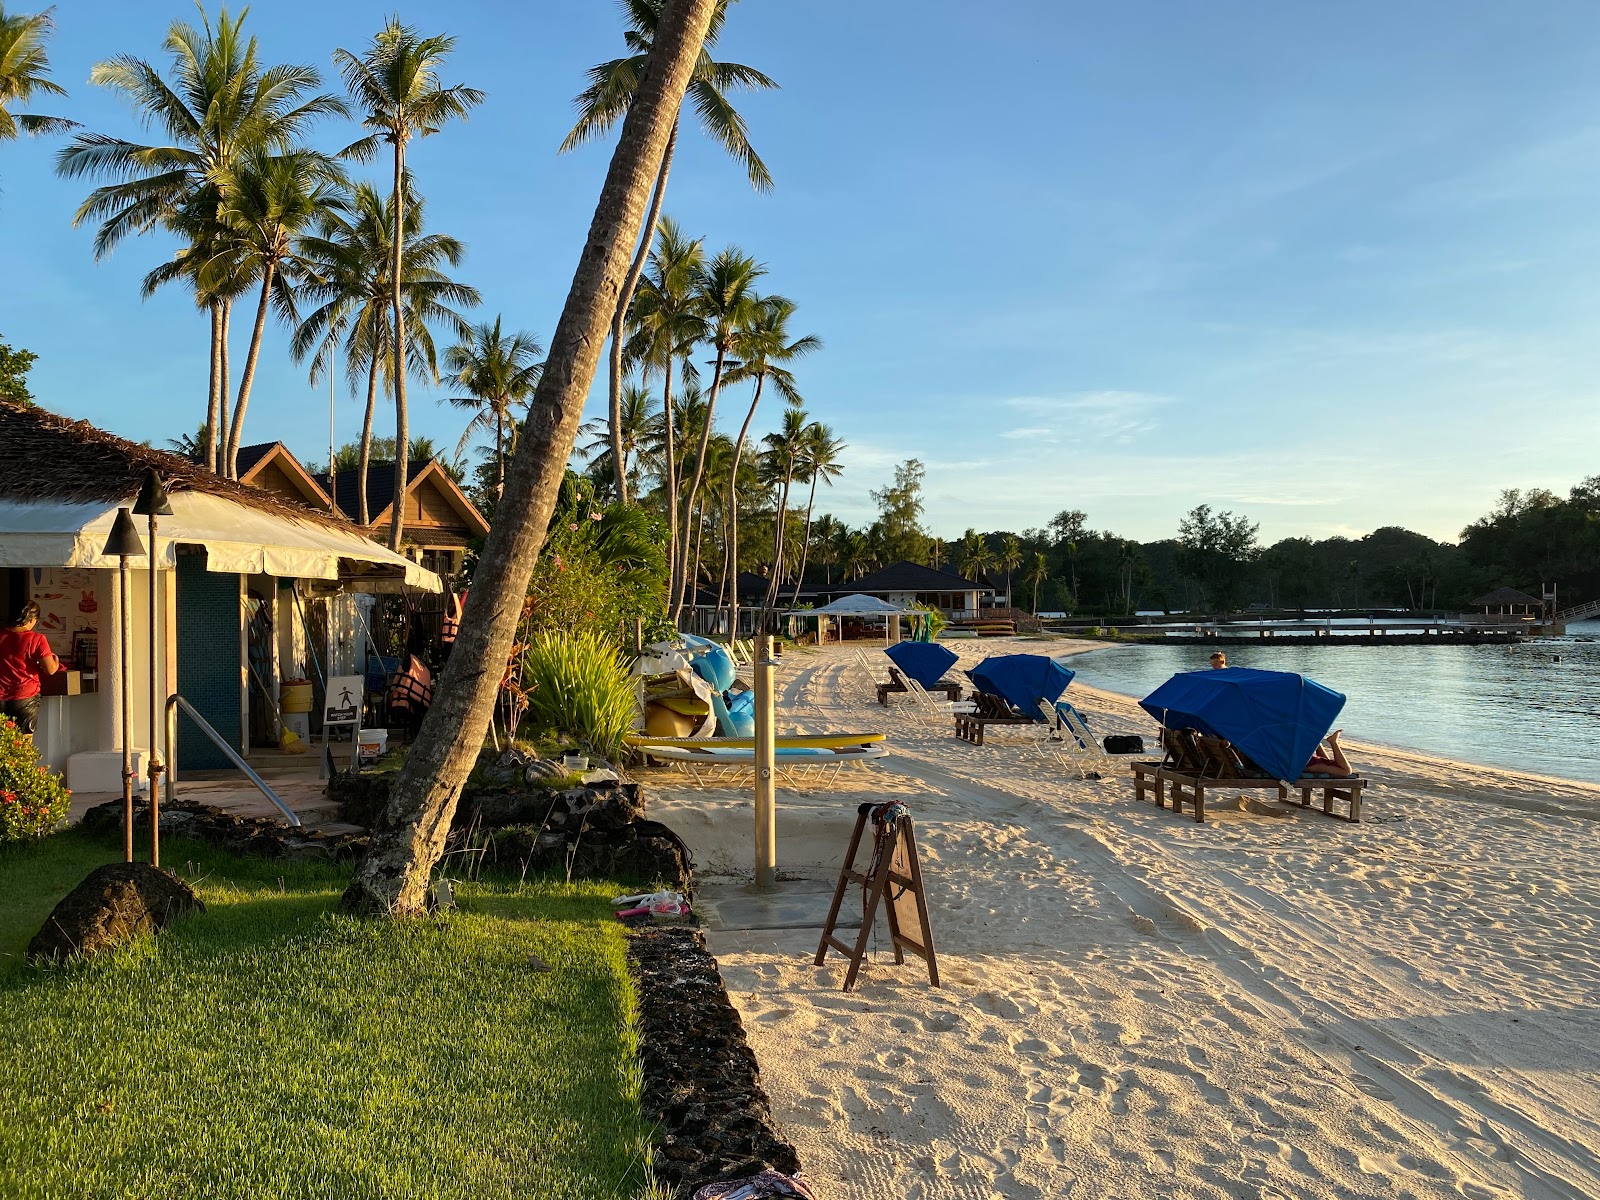 Foto de Palau Pacific Resort - lugar popular entre los conocedores del relax